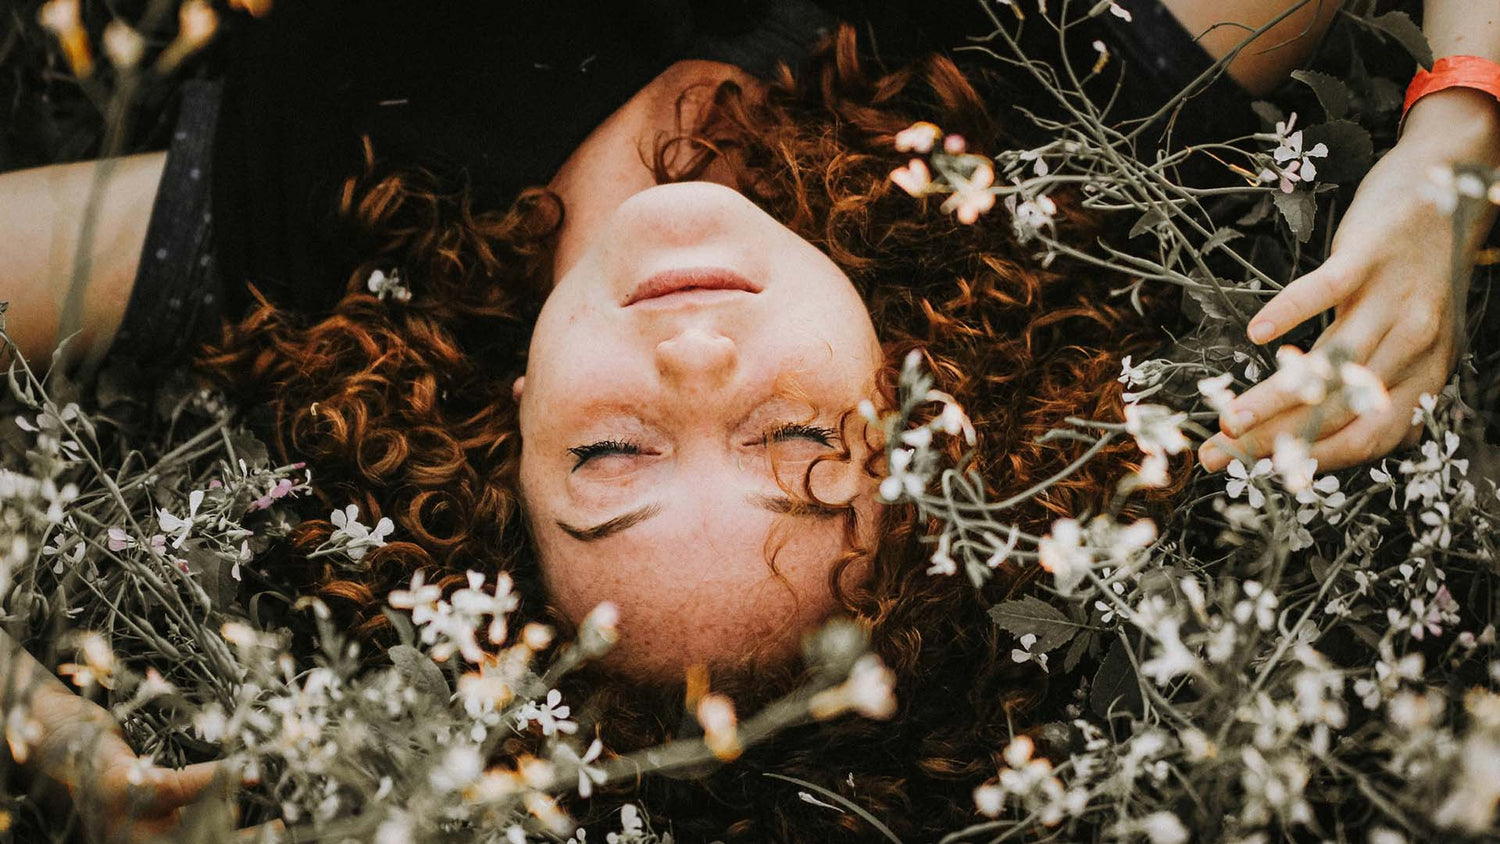 woman sleeping among flowers